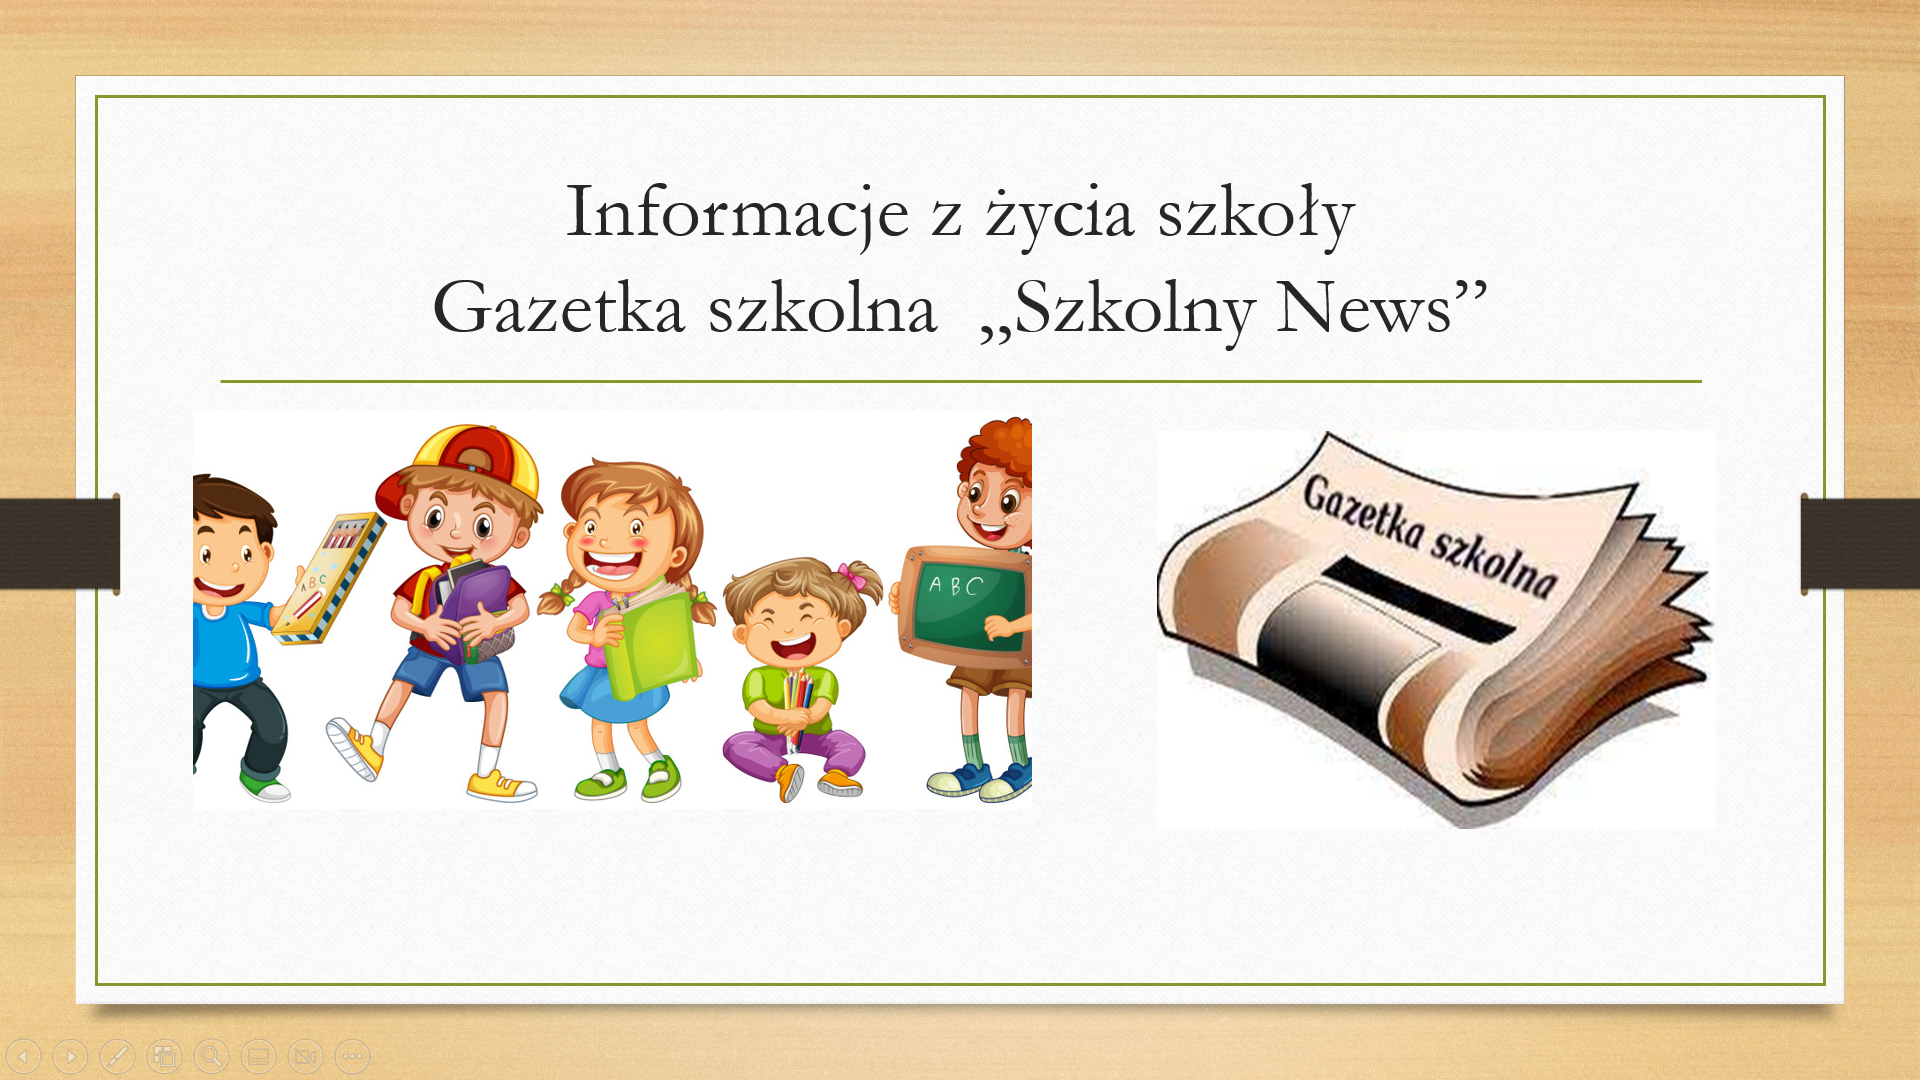 Informacje z życia szkoły, Gazetka szkolna "Szkolny News".